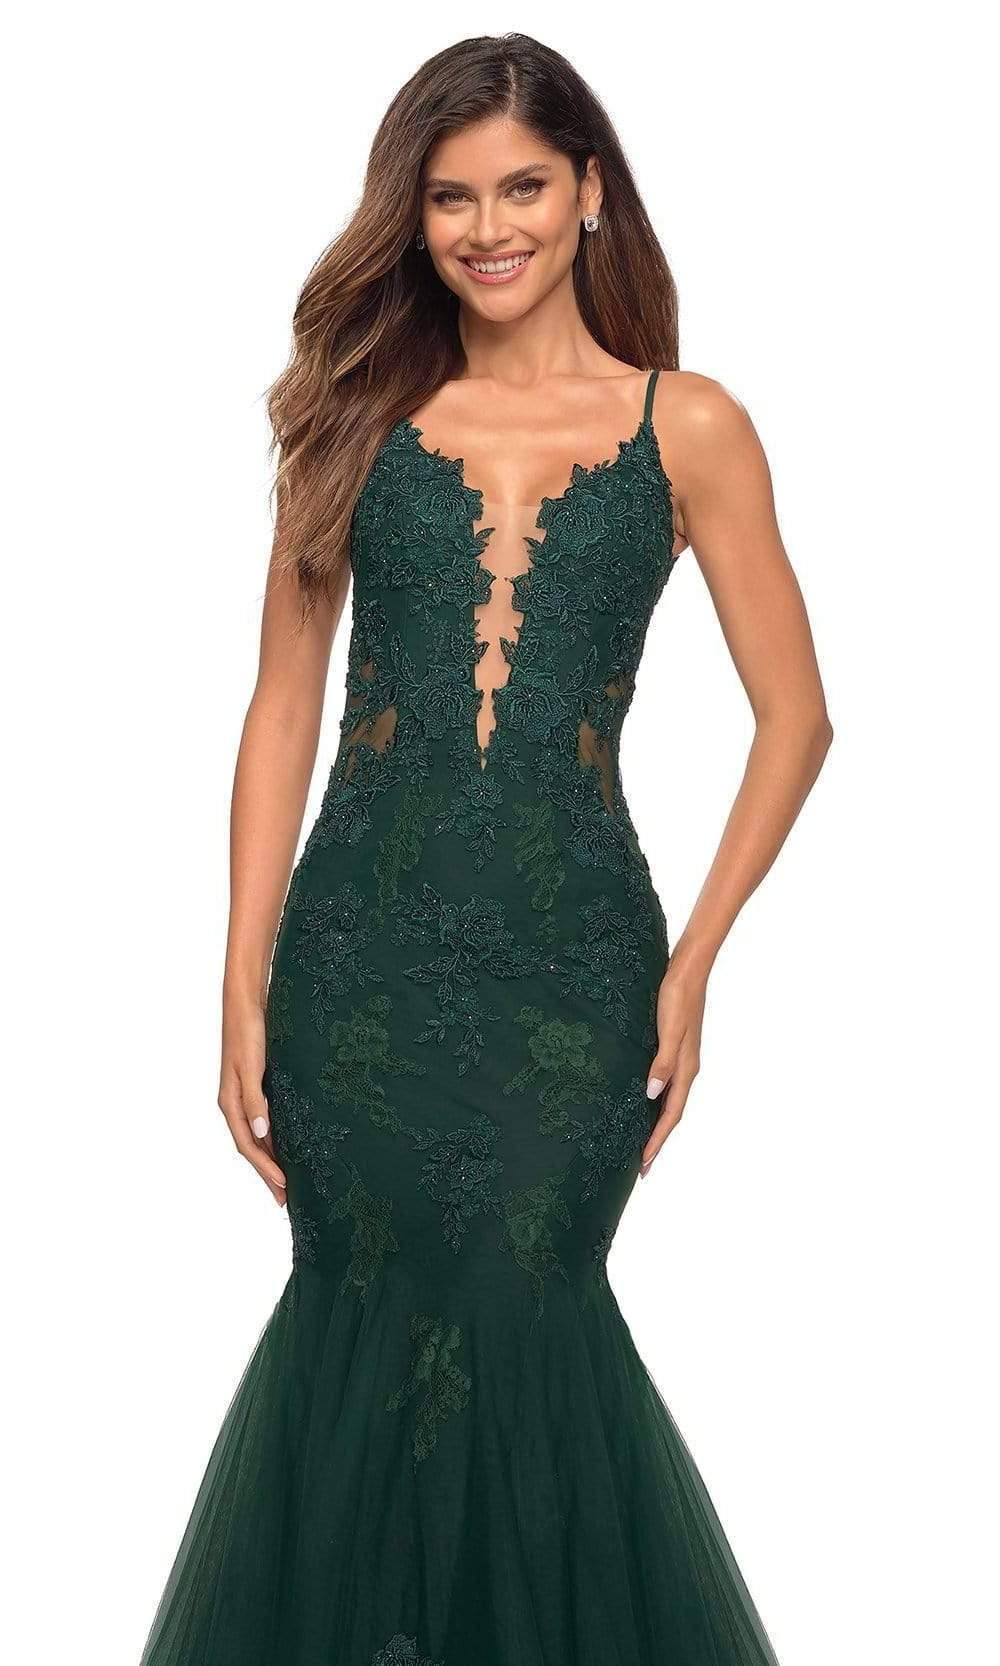 La Femme - 29680 V-Neck Lace Appliqued Gown Special Occasion Dress